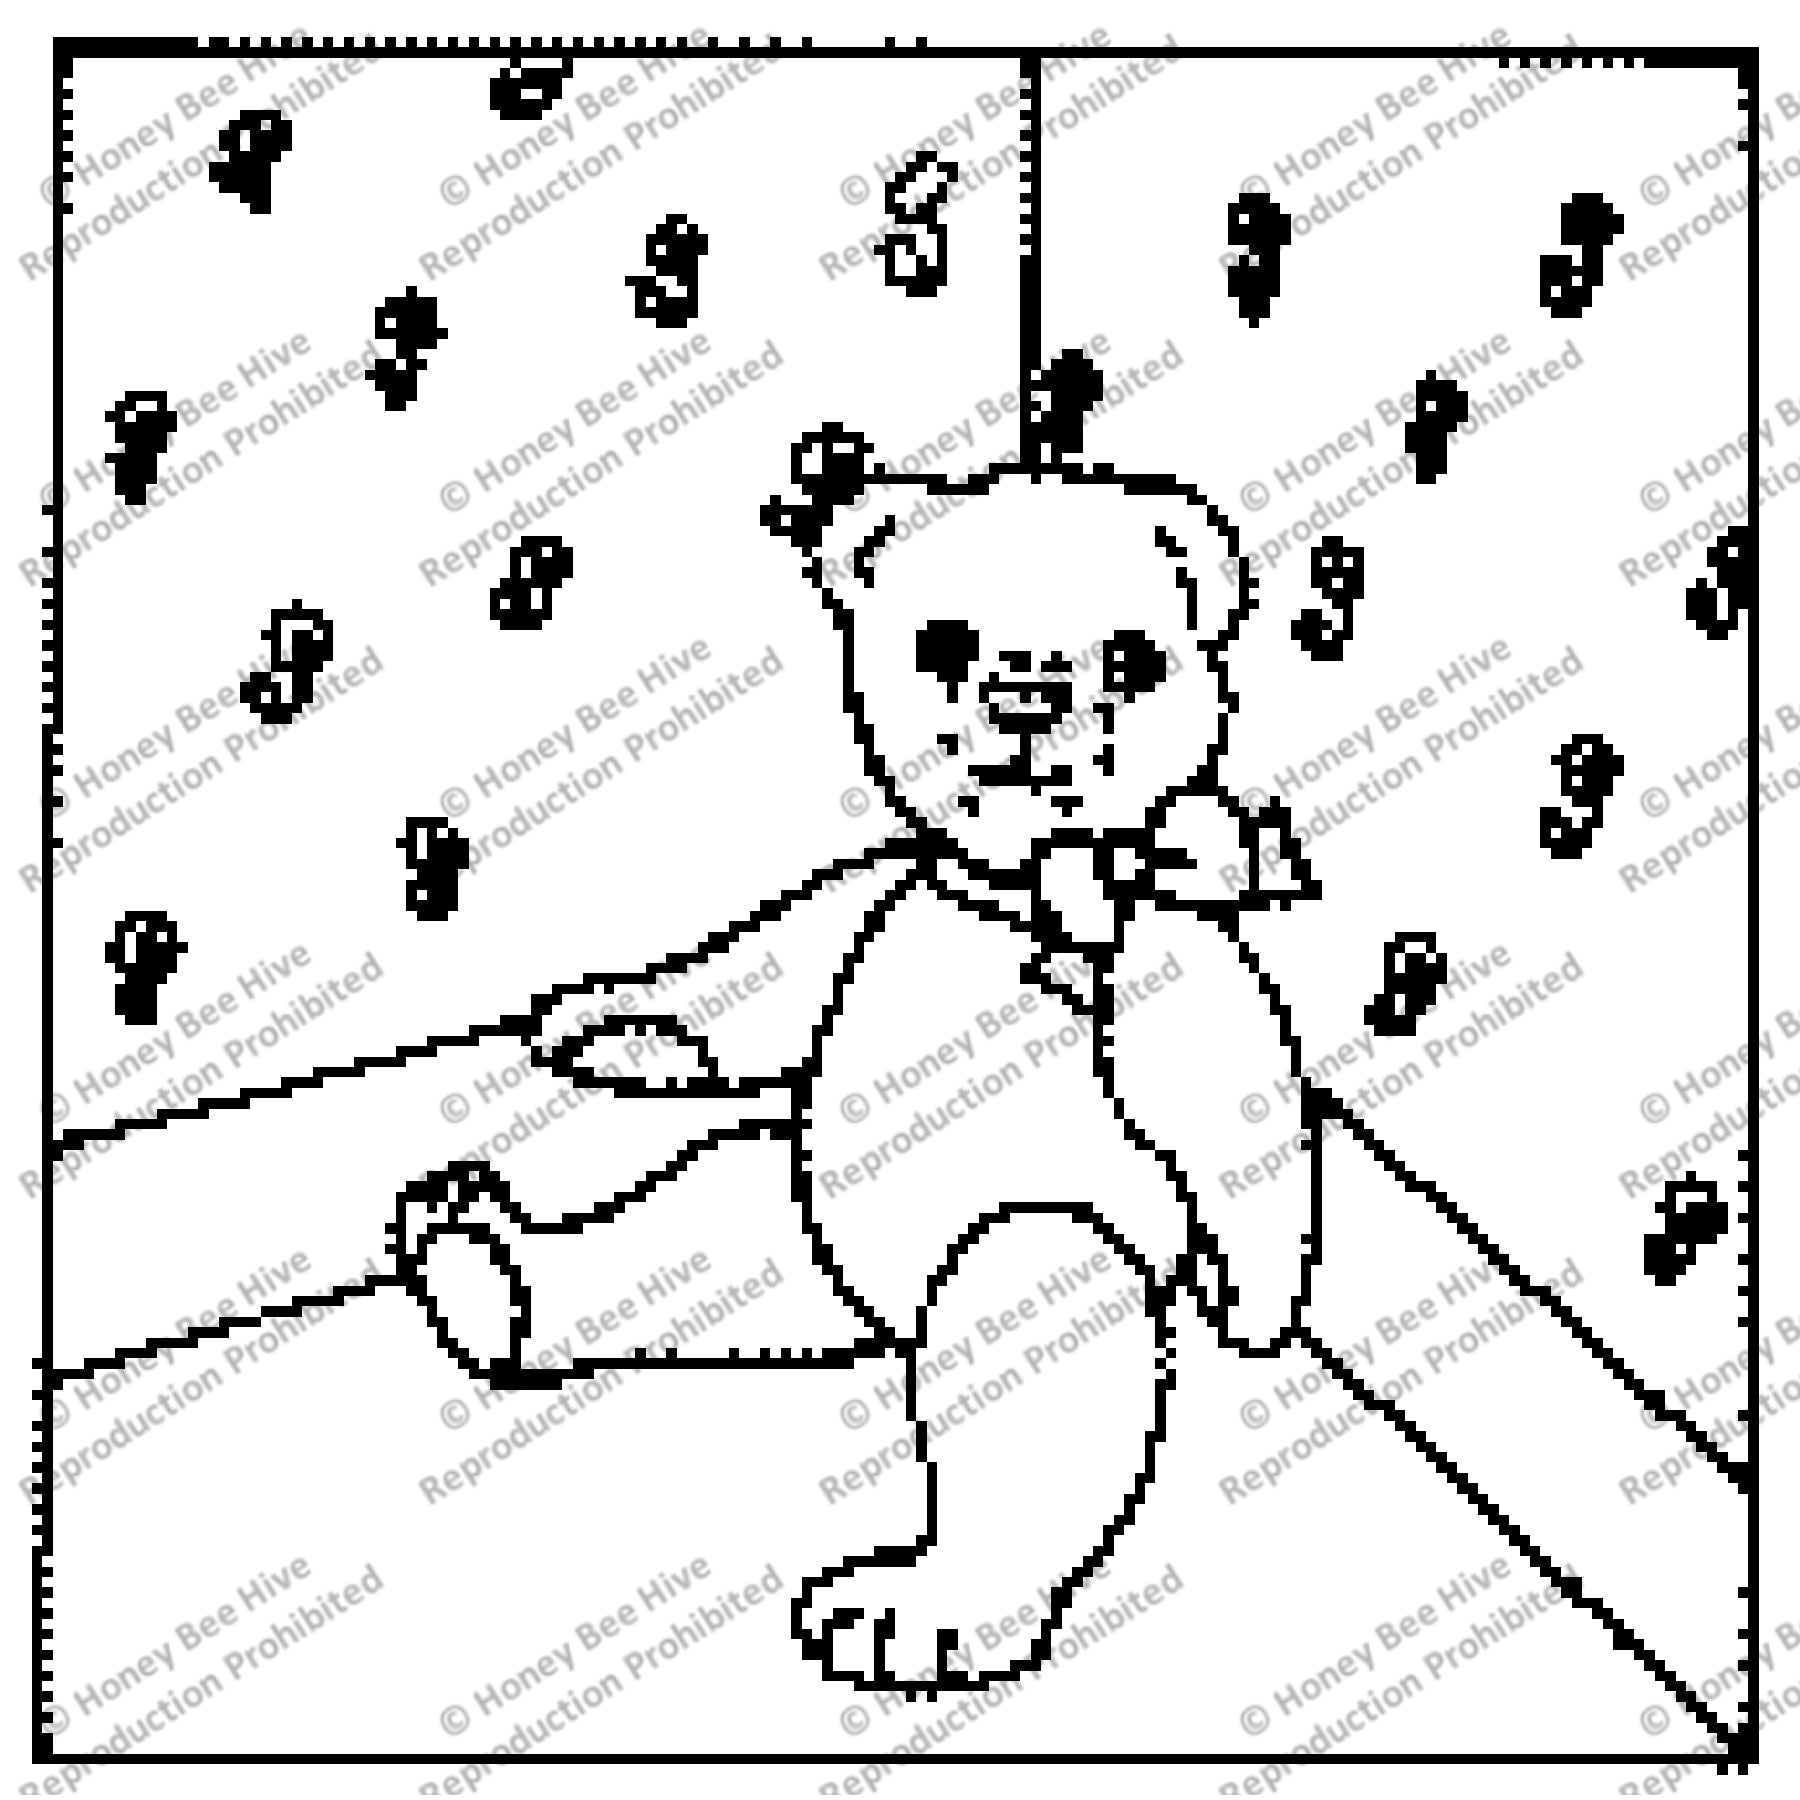 Corner Teddy Bear, rug hooking pattern